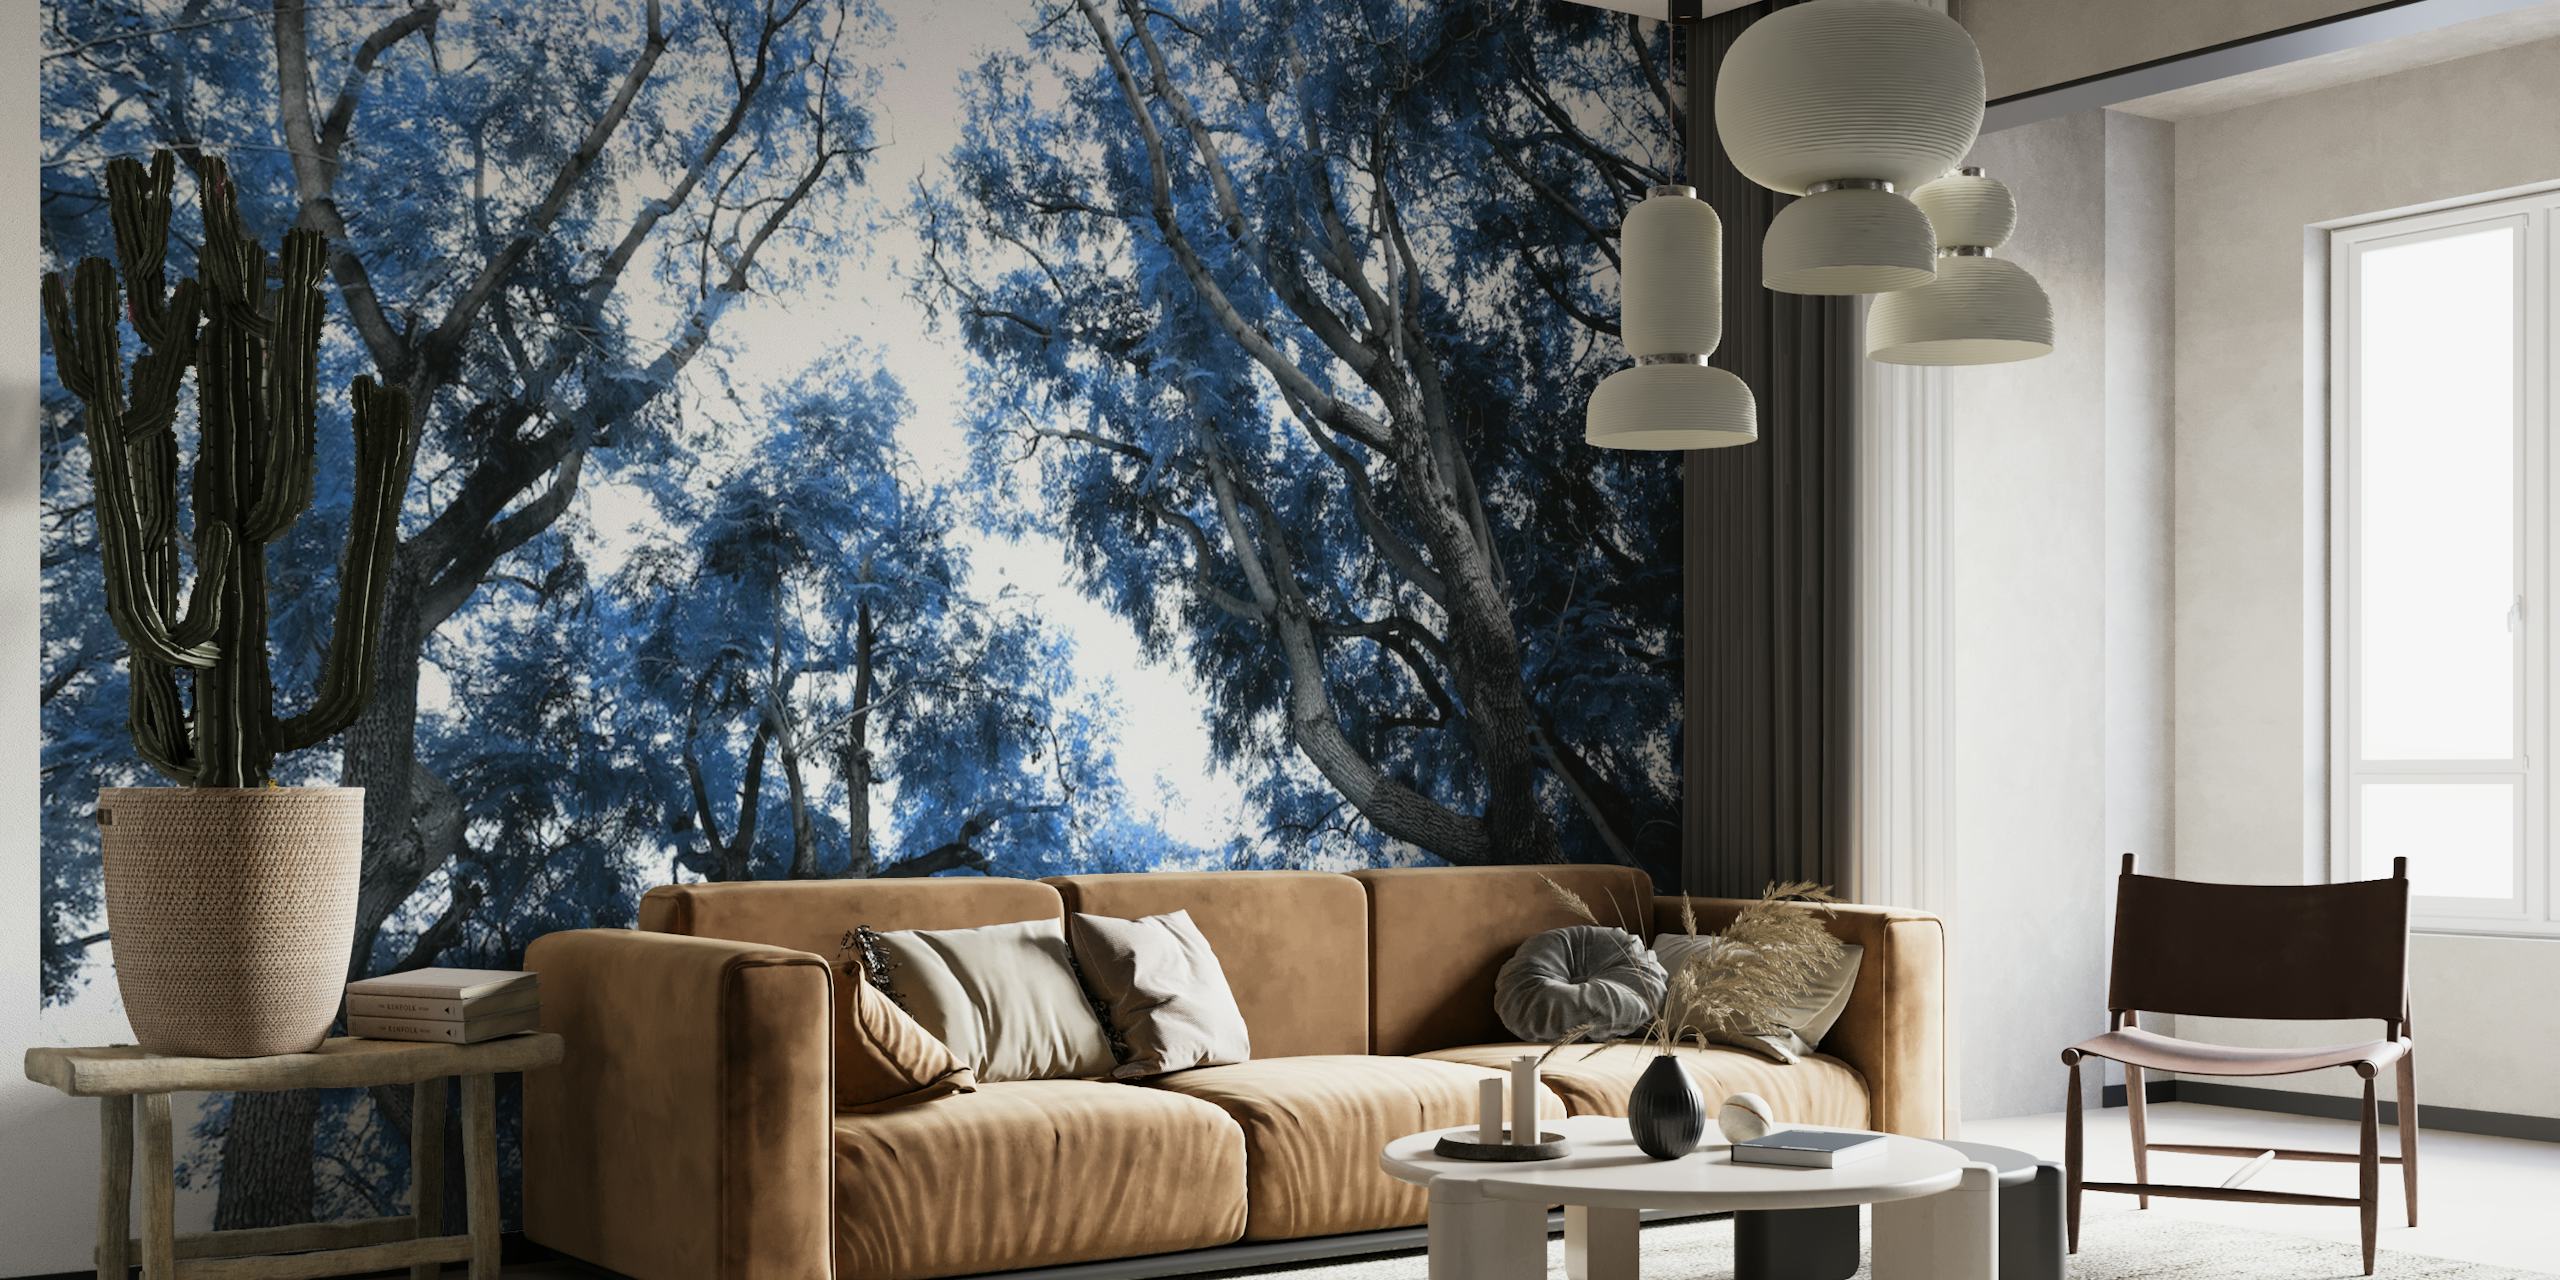 Fotomural vinílico de parede com silhueta de árvore azul marinho e prateada